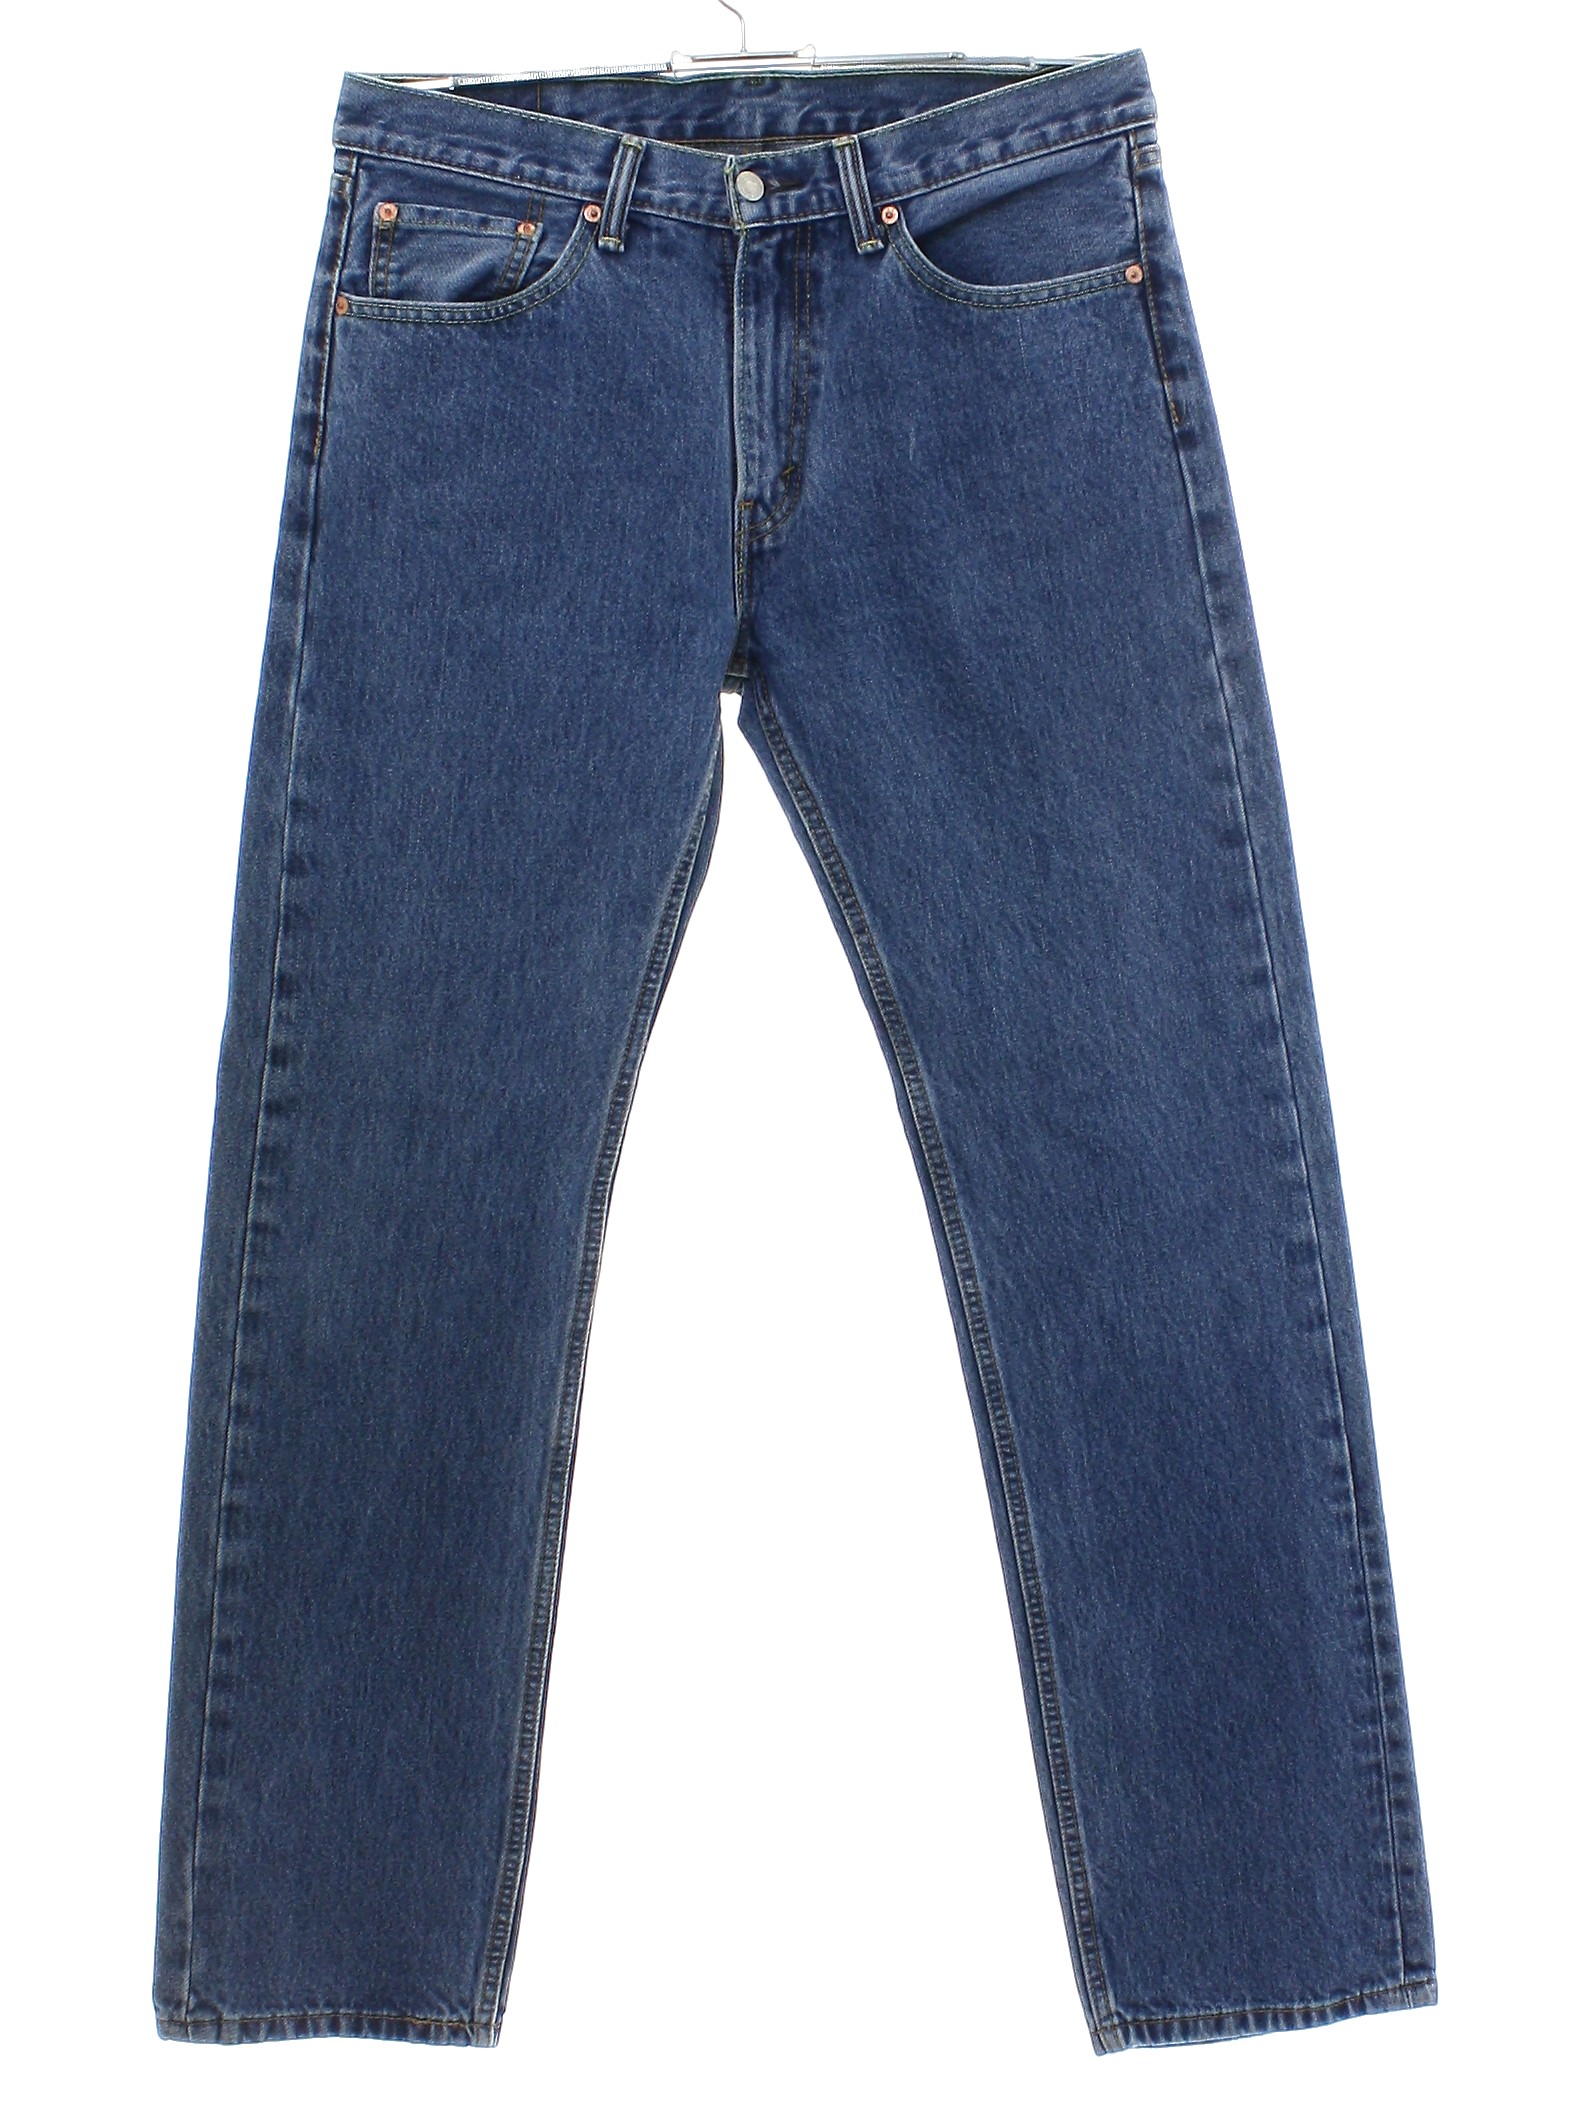 Pants: 90s -Levis 505s- Mens medium blue background cotton denim with ...